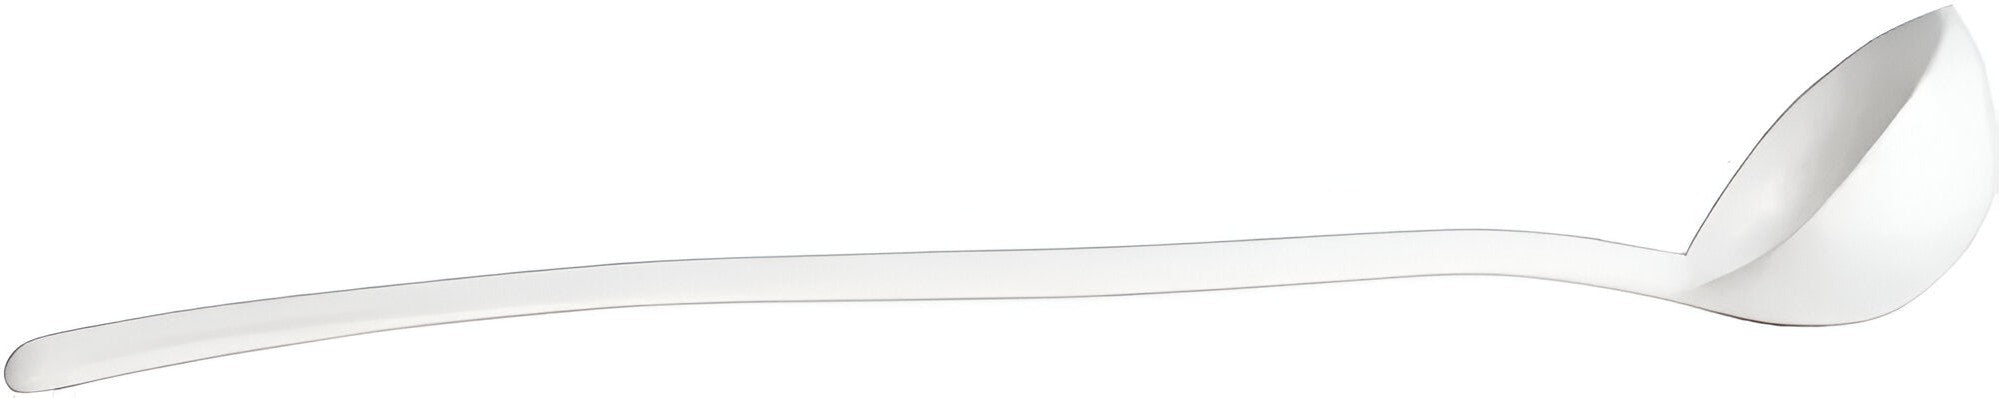 Bugambilia - Classic 3.04 Oz Large White Fiji Ladle With Elegantly Textured - SD013WW